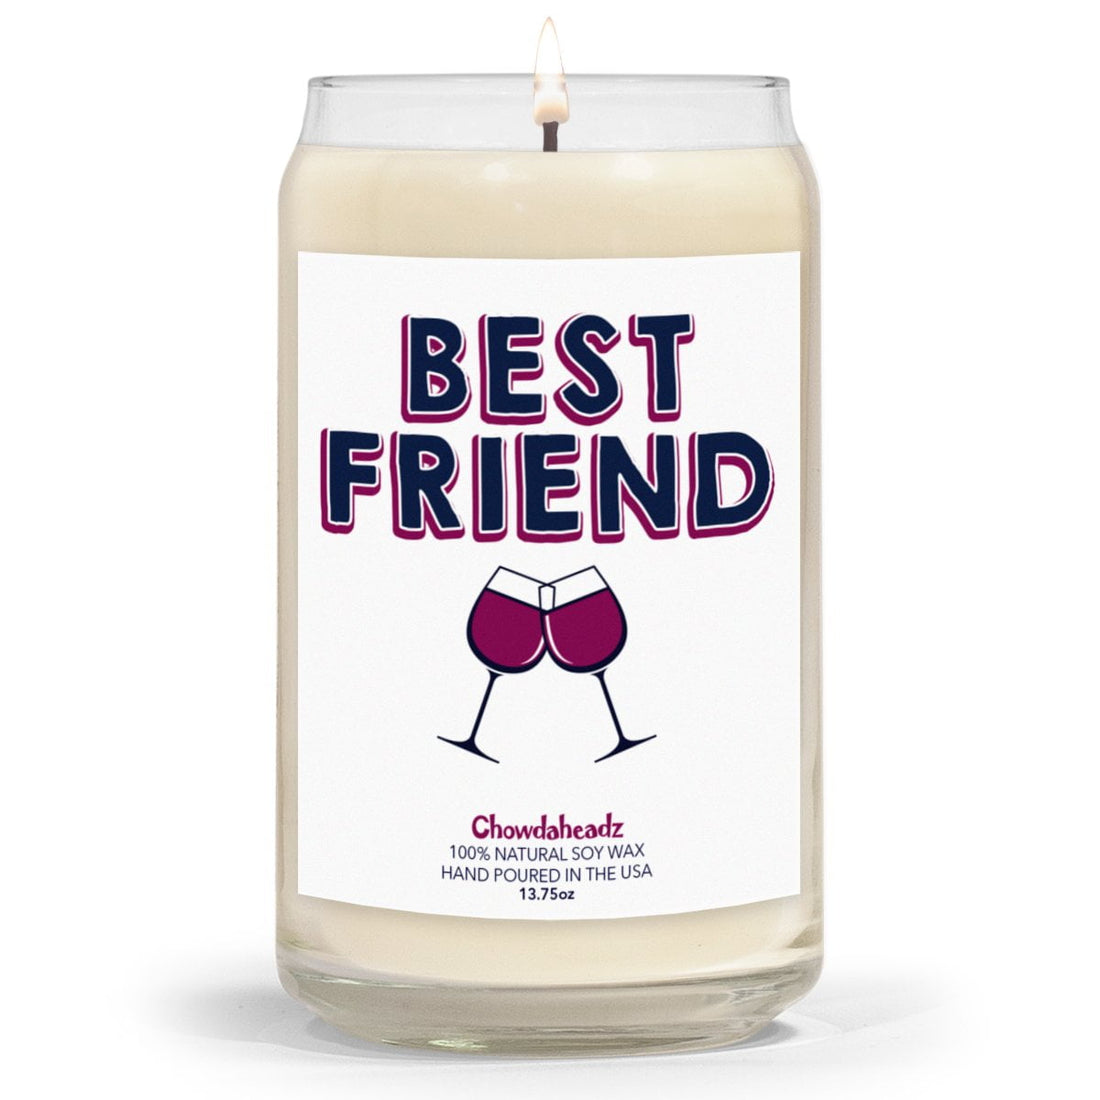 Best Friend 13.75oz Candle - Chowdaheadz